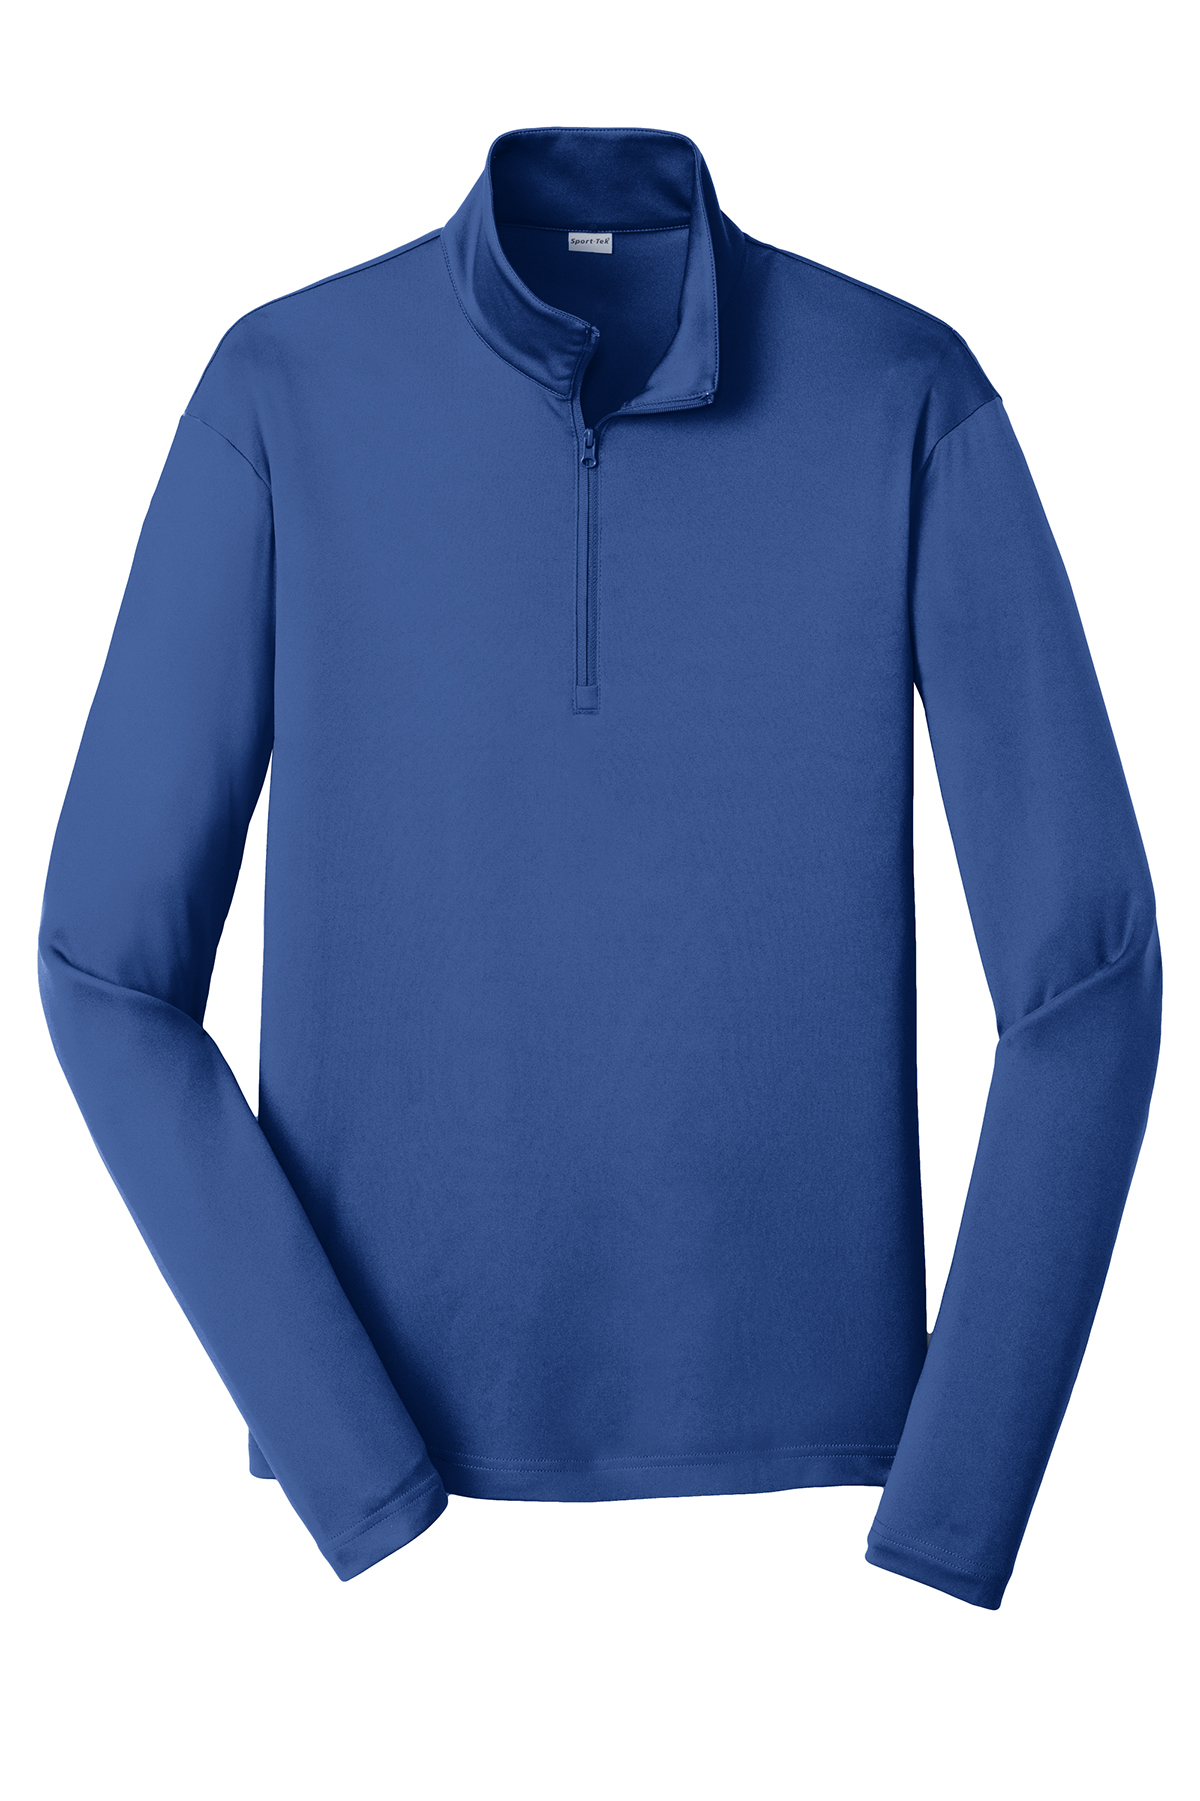 Sport Tek Posicharge Competitor 1 4 Zip Pullover 1 2 1 4 Zip Sweatshirts Fleece Sanmar